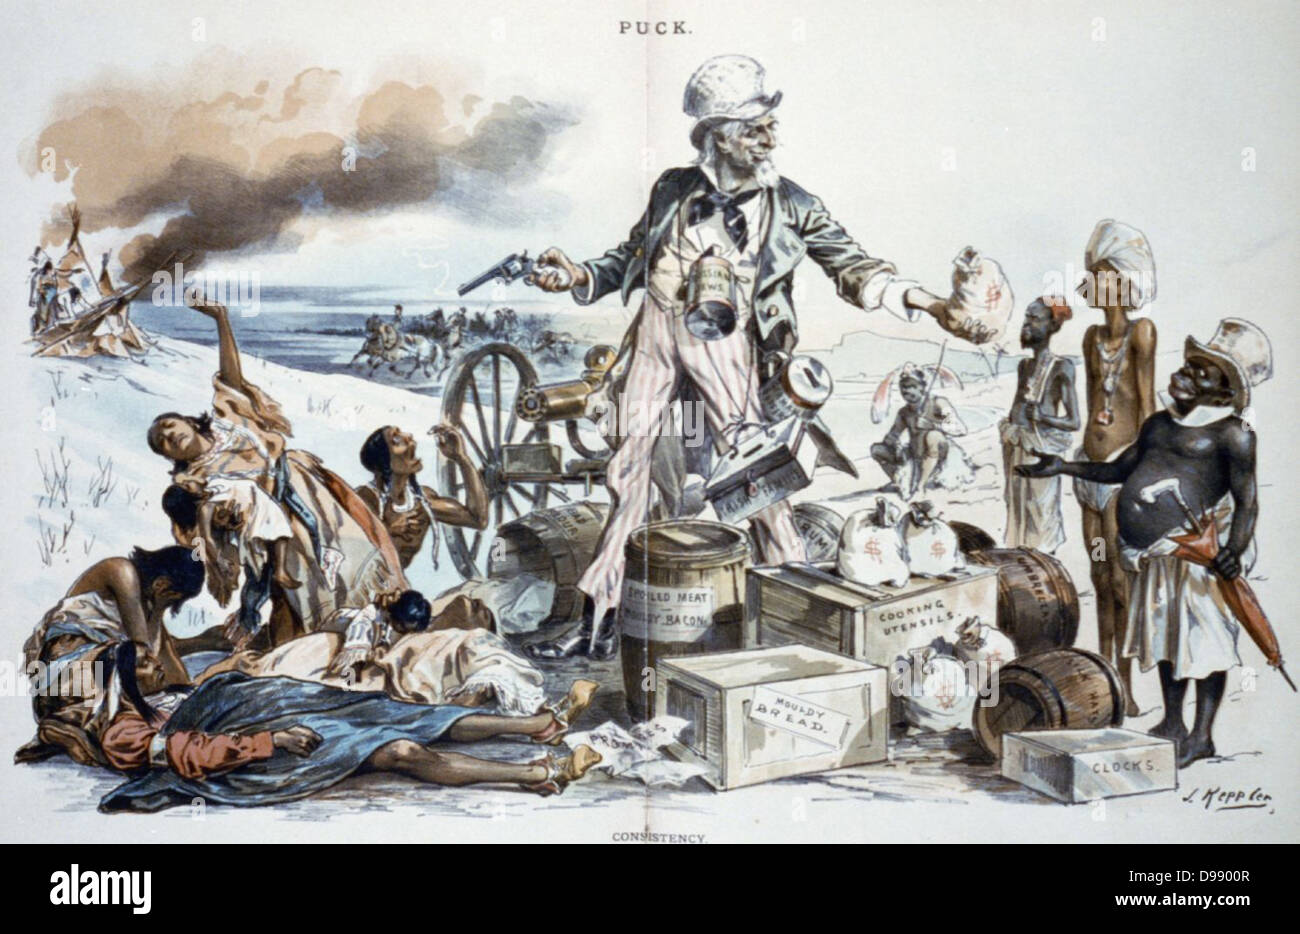 Satire auf Wohlwollen Uncle Sam's in Richtung Afrikaner, Asiaten und Eurpoeans während Massaker Indianer bei Wounded Knee. Drucken: Lithographie, 1891. Stockfoto